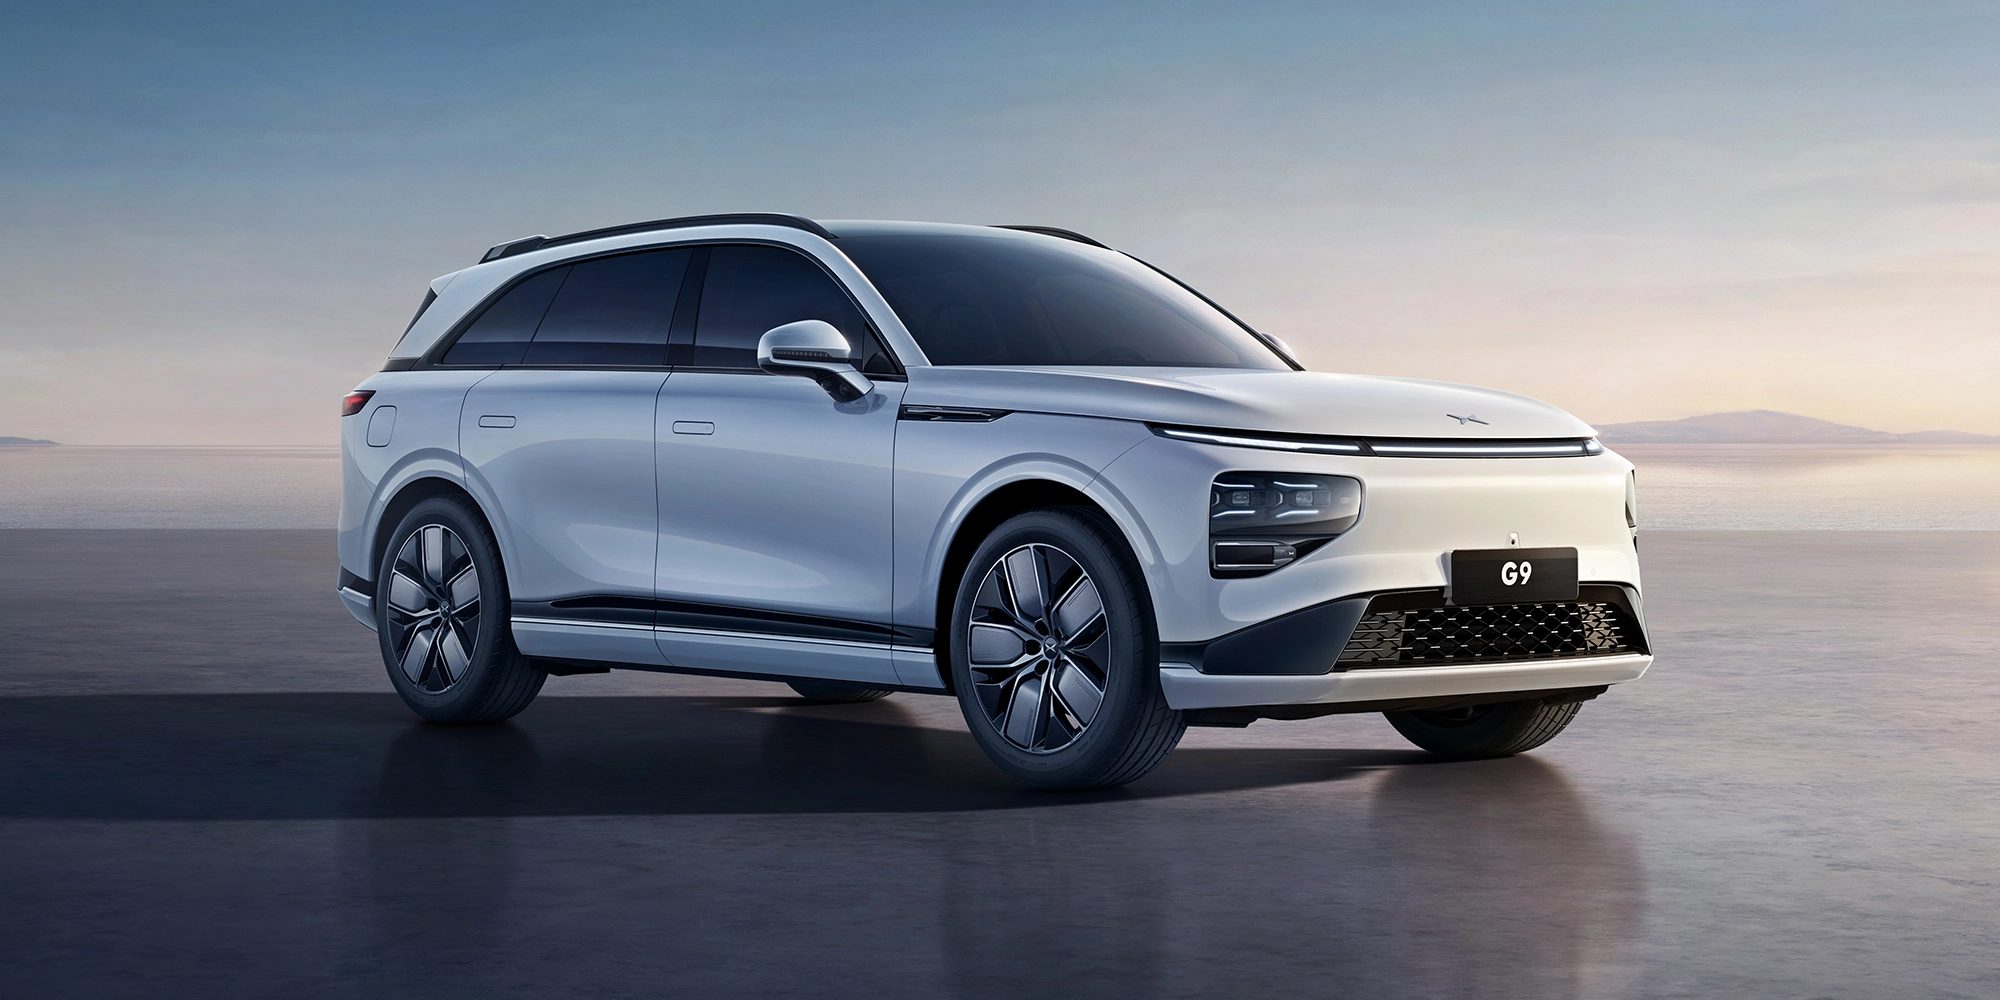 Le constructeur chinois XPeng s'attaque au marché européen avec son SUV électrique G9